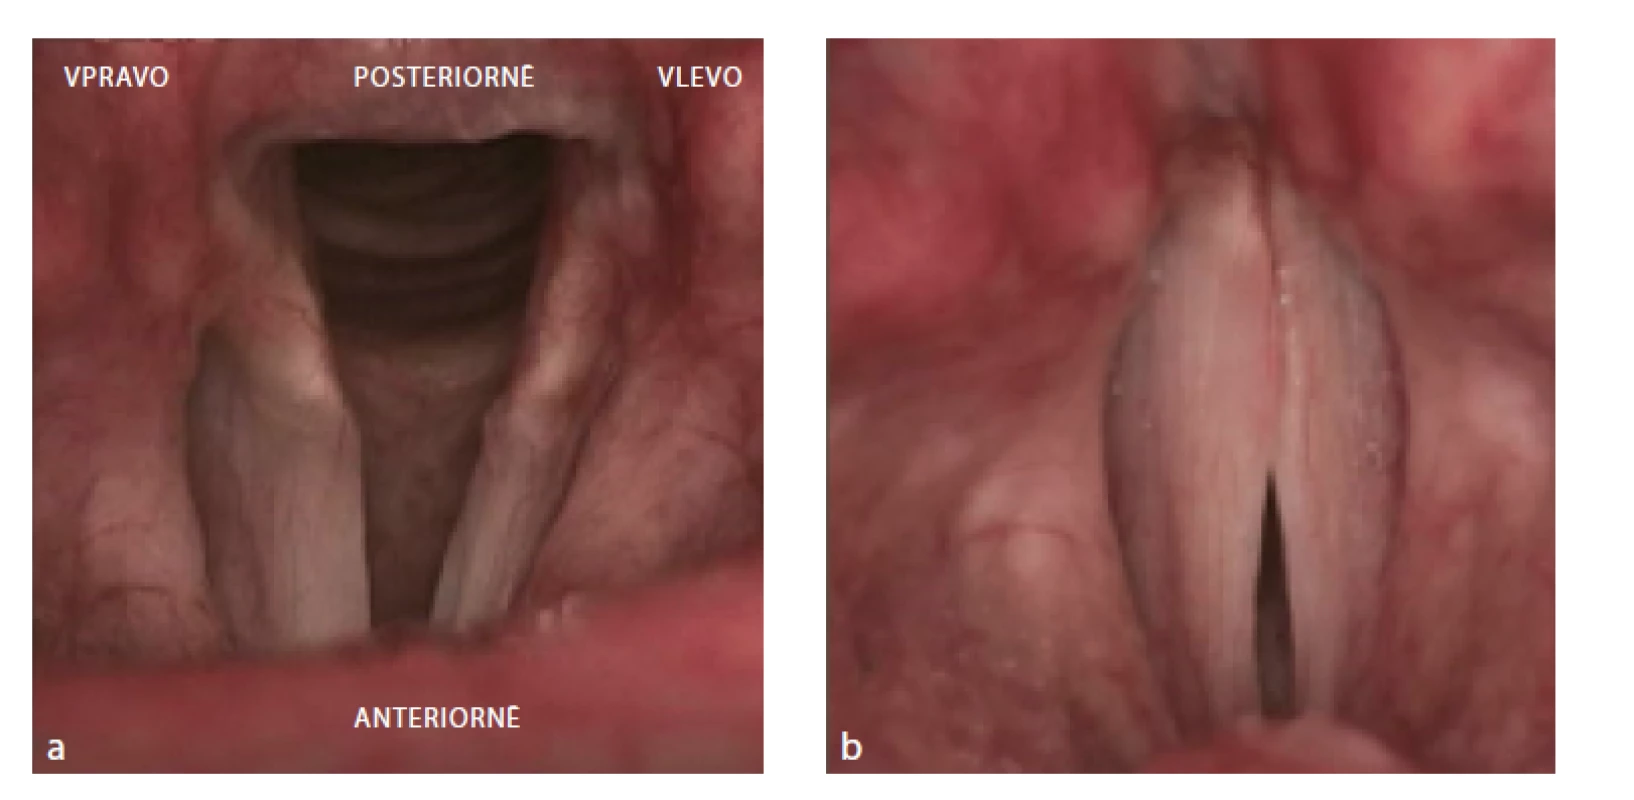 Rigidní lupenlaryngostroboskopie. Inkompletní paréza pravé hlasivky. V respiračním postavení
patrné omezení abdukce vpravo (1a). Ve fonačním postavení insuficience v přední a střední třetině
glottis (1b). Zdroj: Klinika otorinolaryngologie a chirurgie hlavy a krku FNHK